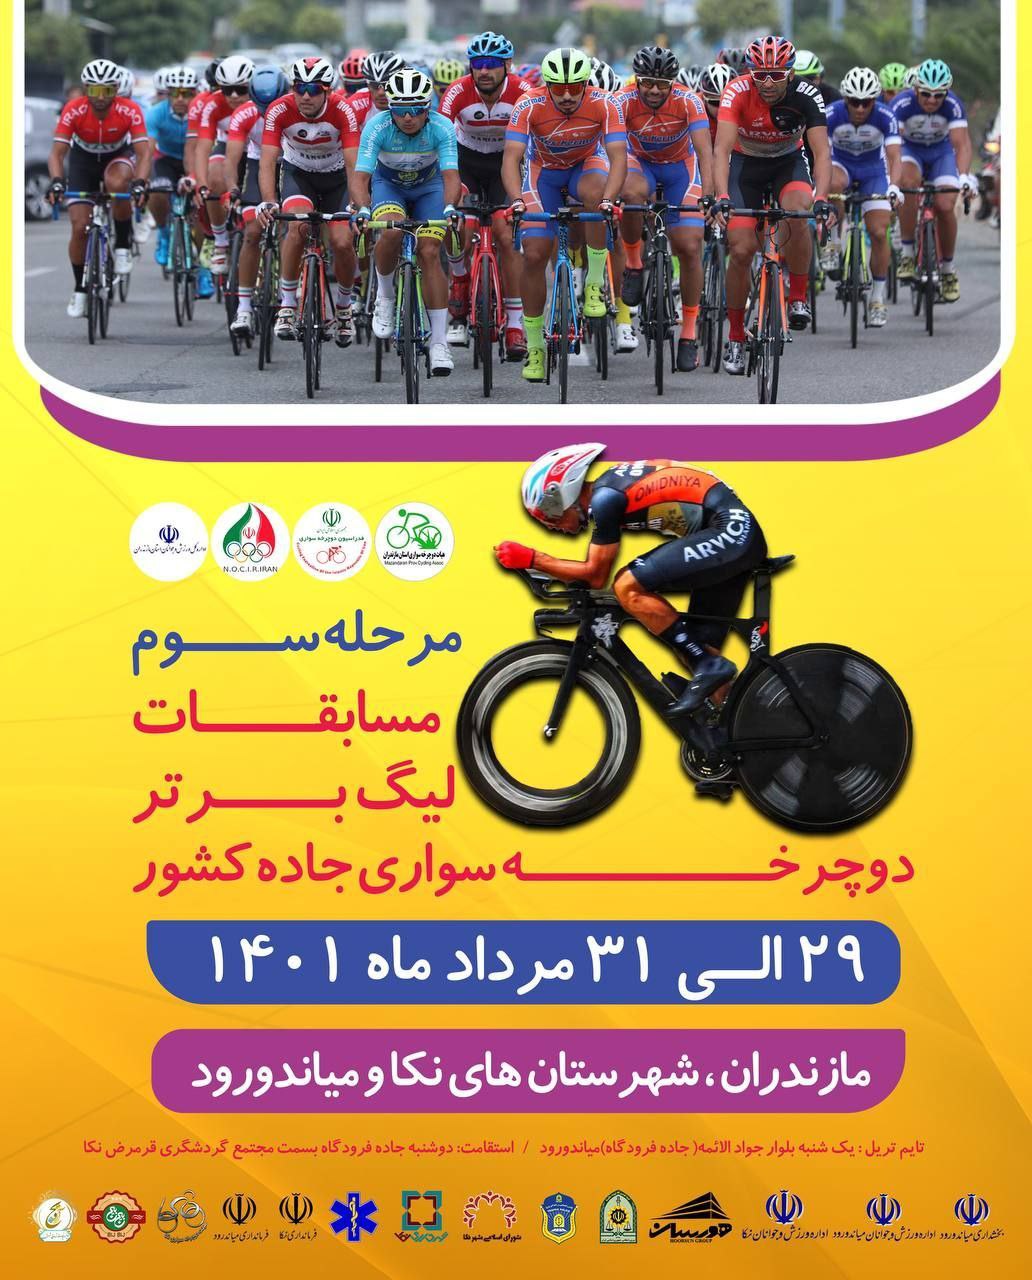 نکا و میاندورود، میزبان مرحله سوم لیگ دوچرخه سواری ایران